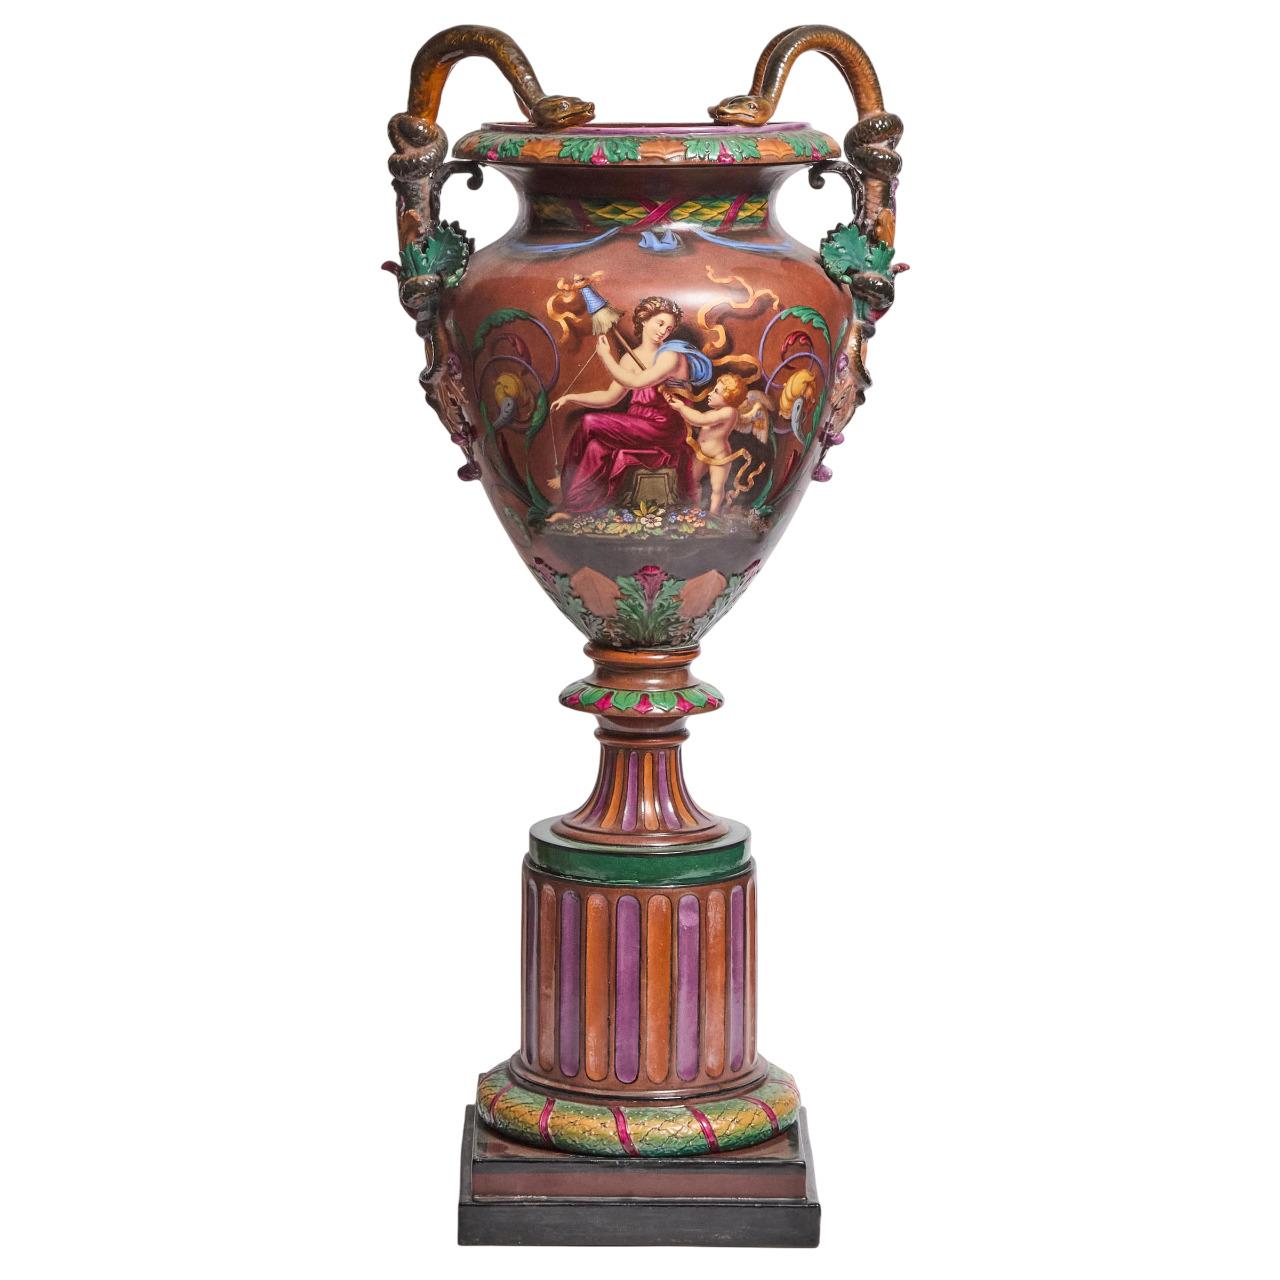 Diese antike Majolika-Ausstellungsvase oder -Urne wurde zweifellos um 1864 von der Manufaktur Royal Worcester im Stil des Barock-Revivals hergestellt. Das Stück ist am Sockel dreimal mit der Kronenmarke von Royal Worcester gestempelt und passt zu